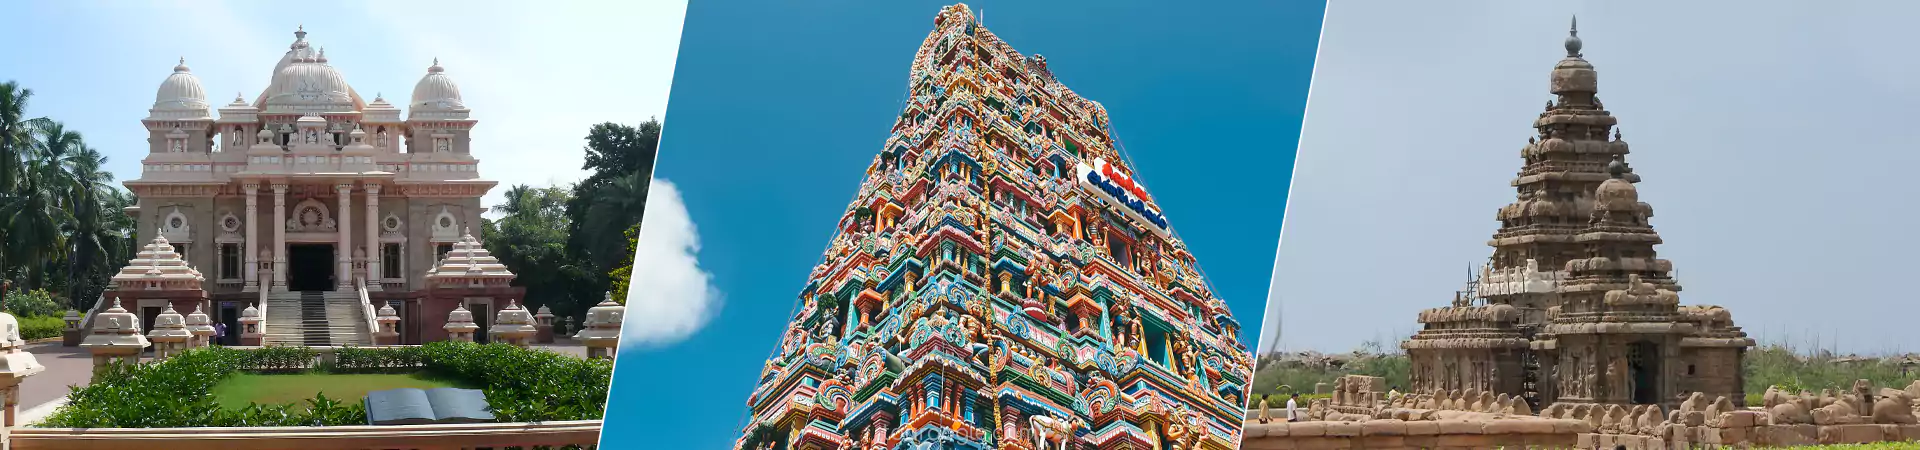 Chennai tour